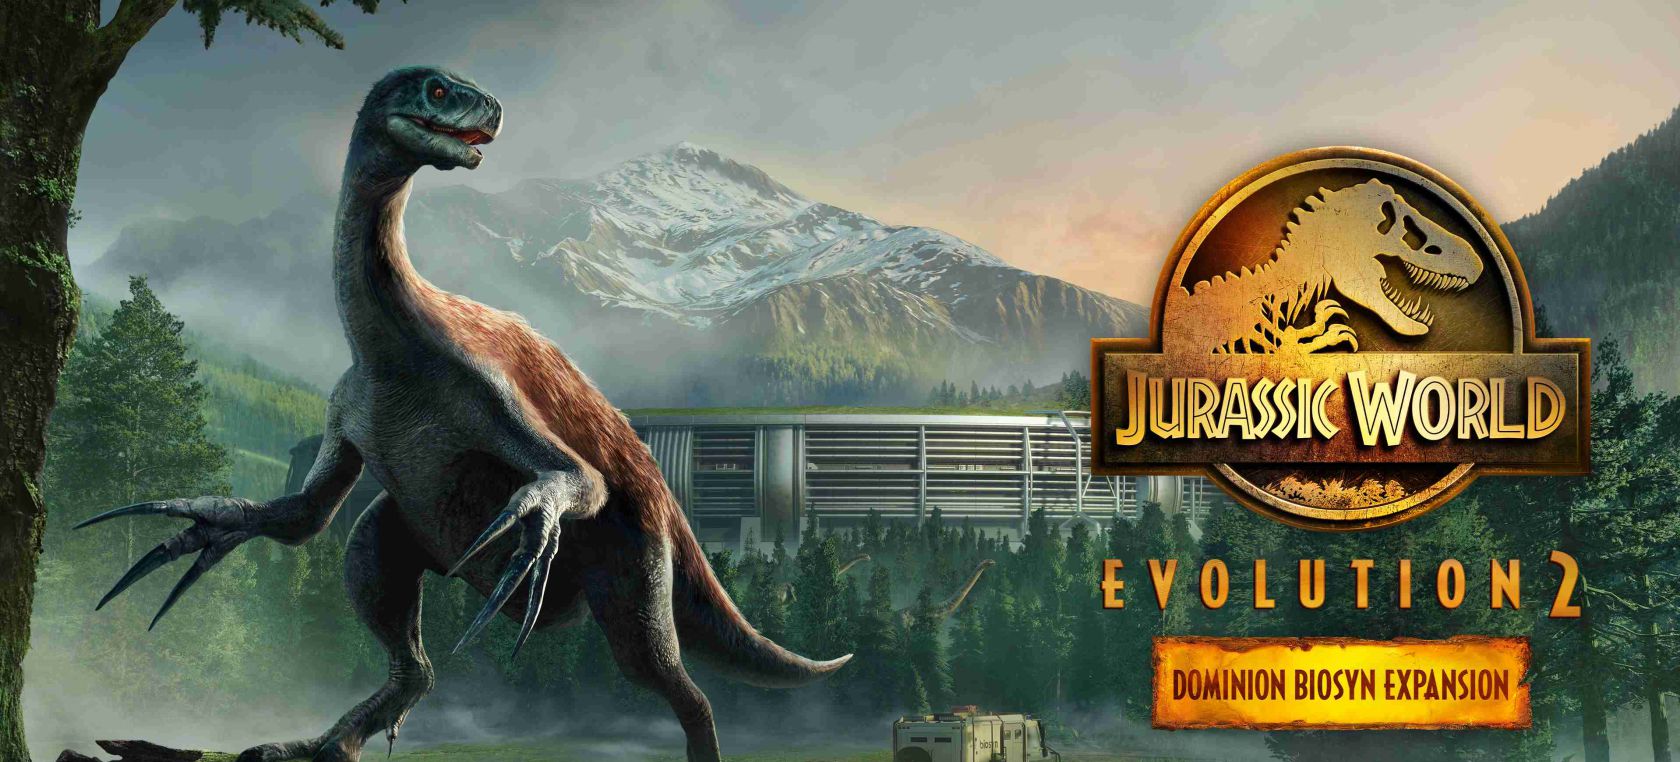 Jurassic World Evolution 2' presenta su expansión Dominion Biosyn |  Videojuegos | LOS40